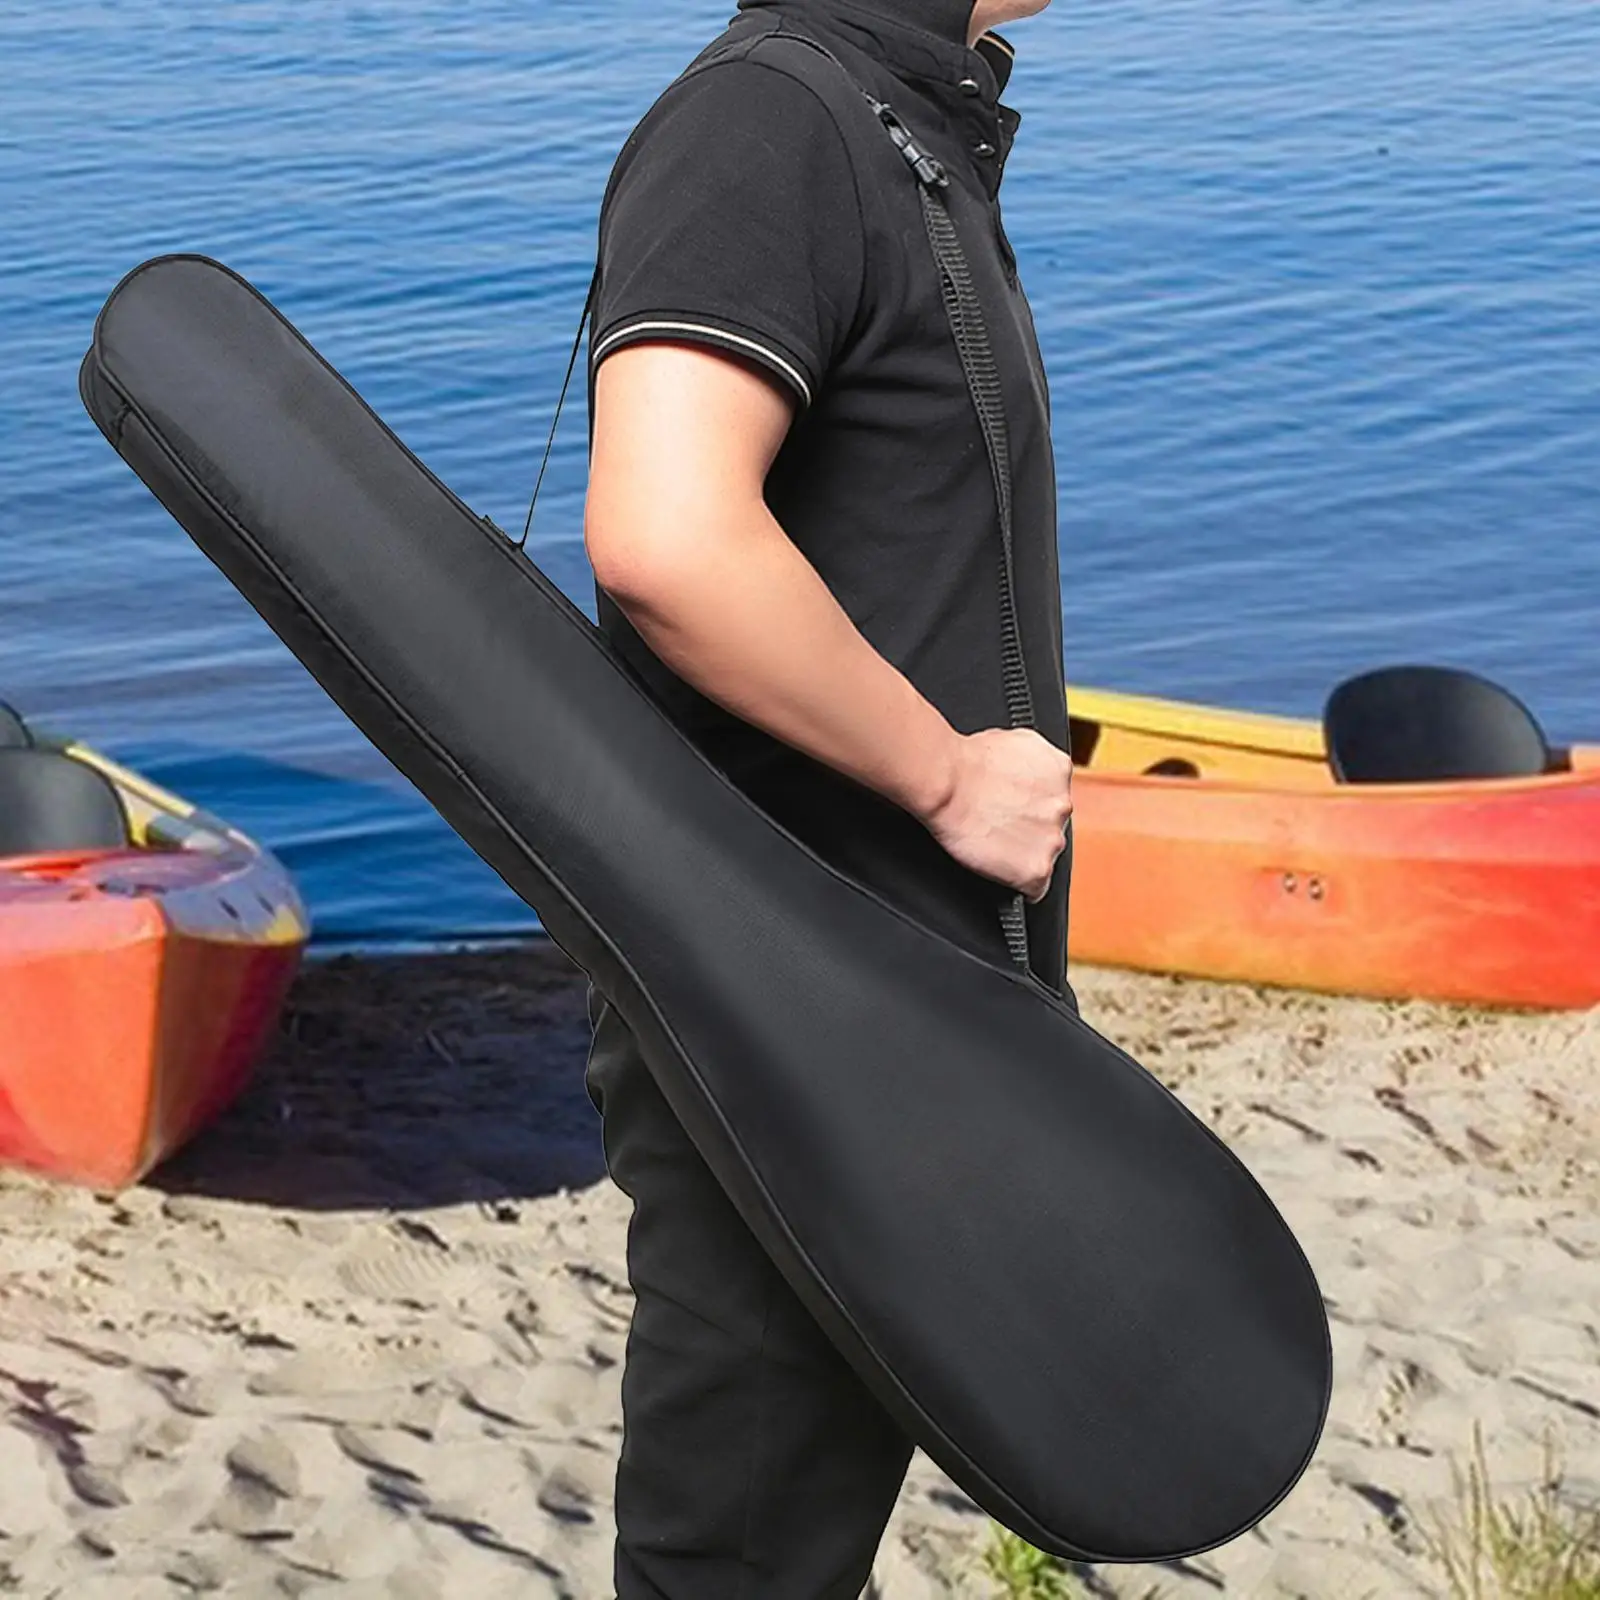 Kayak Paddle Bag Paddle Storage Bag Portable Wear Resistant Adjustable Shoulder Strap Kayak Accessories Paddle Carrier Bag